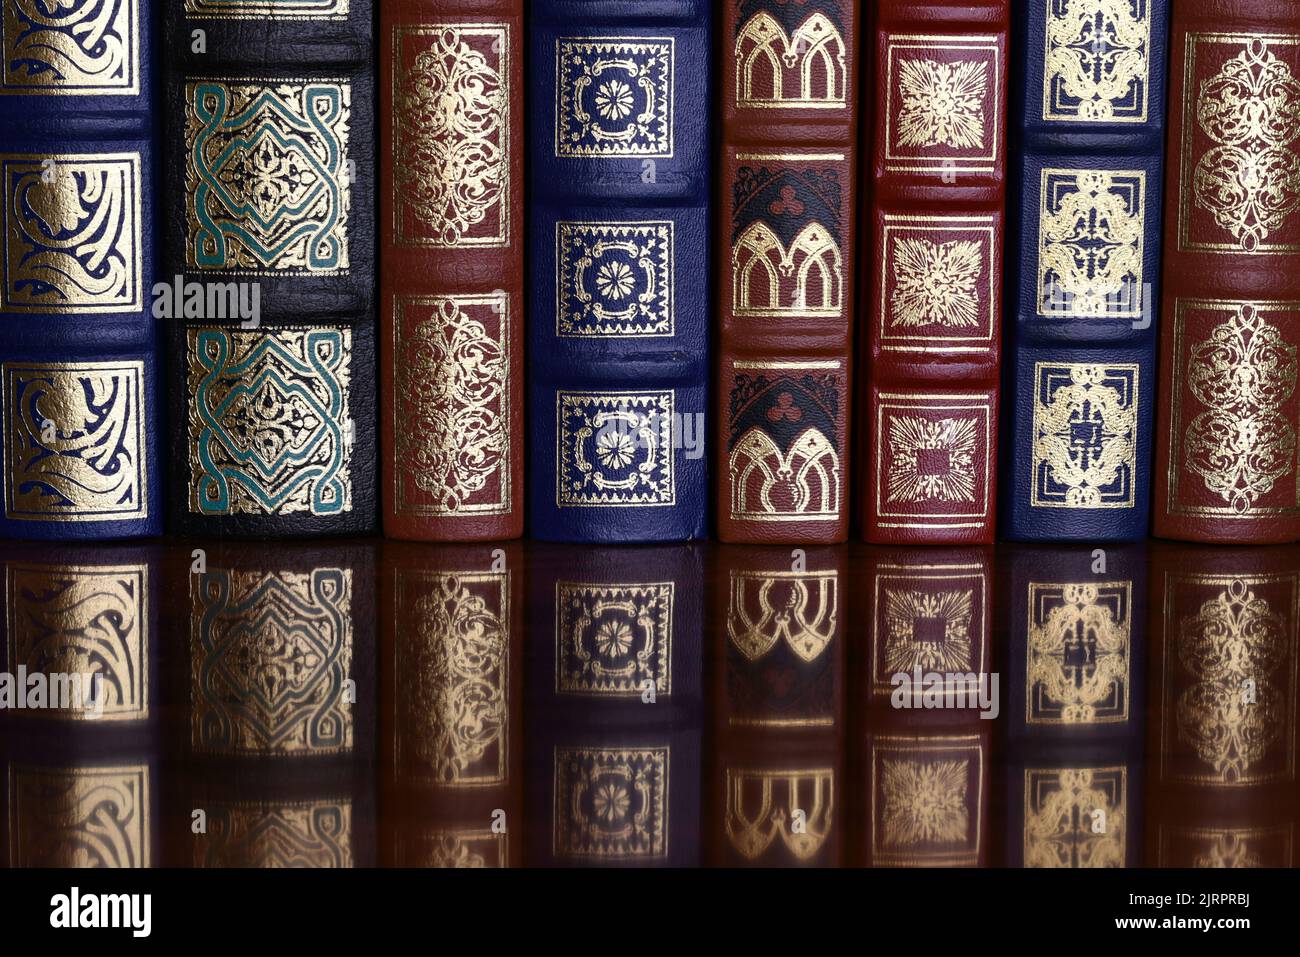 Detalle de unos libros clásicos en la estantería de una biblioteca Stock Photo